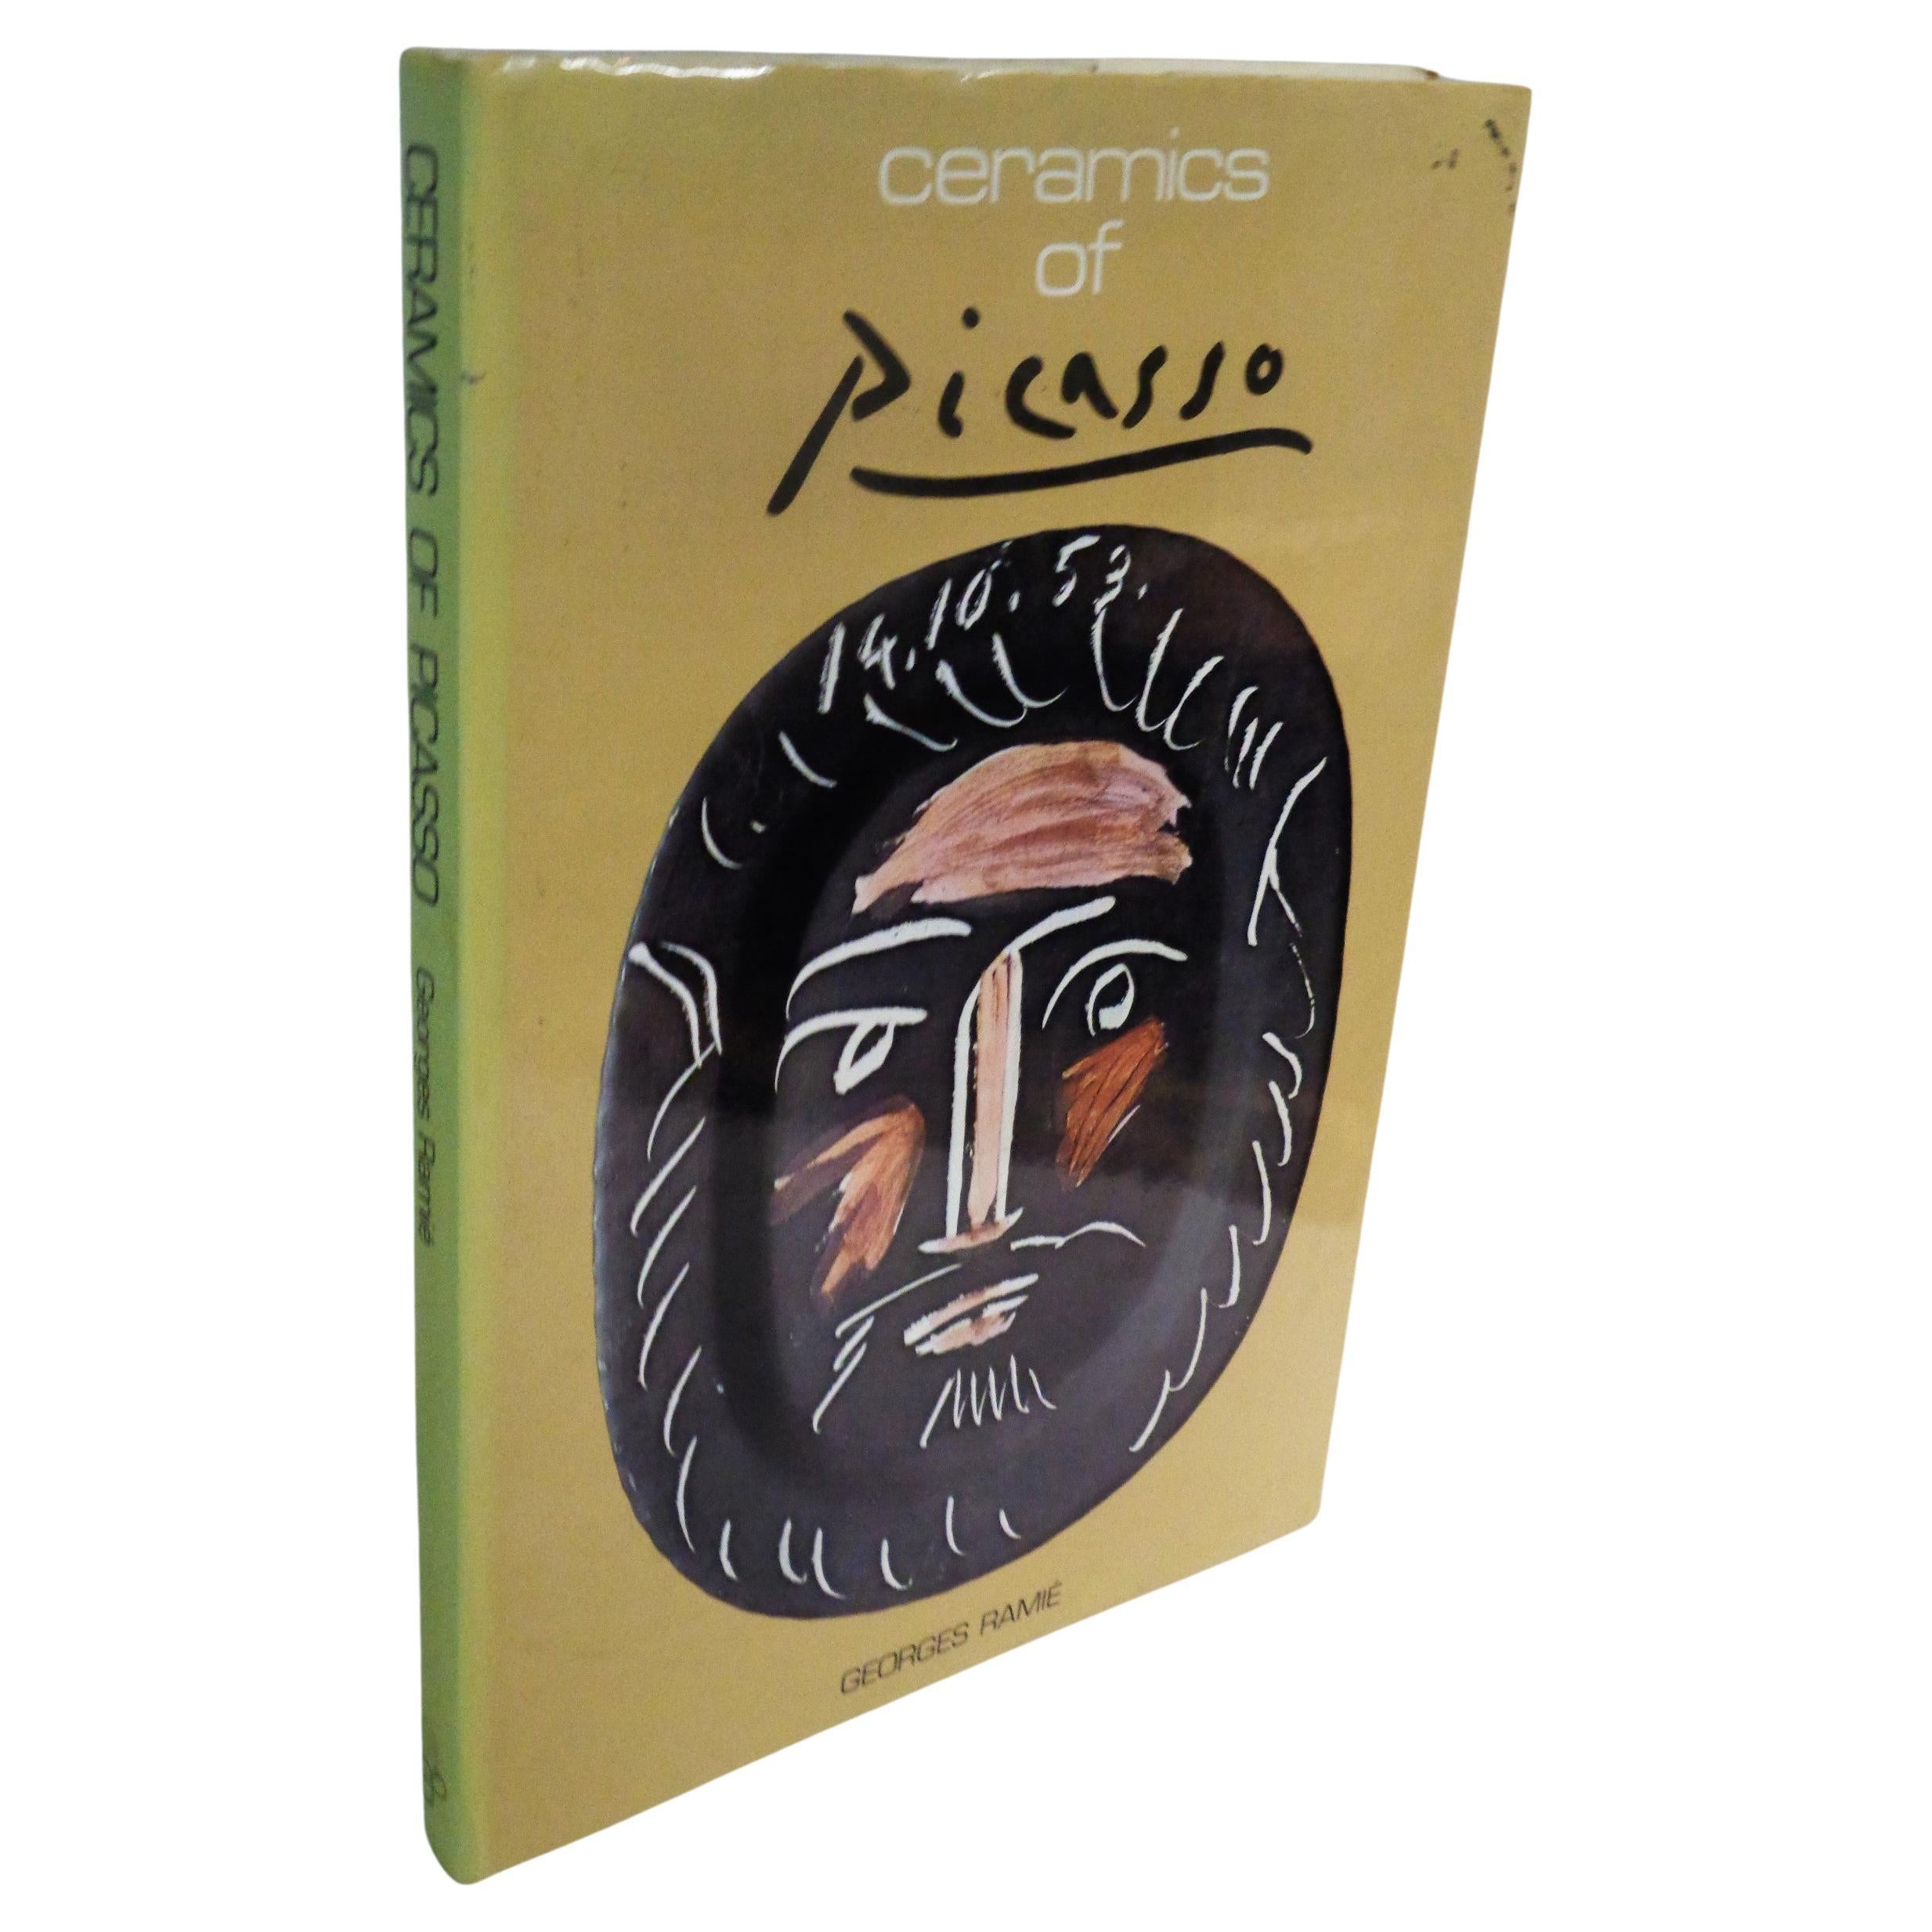 Ceramics of Picasso,  Georges Ramie - 1985 Ediciones Poligrafa, S.A.  9